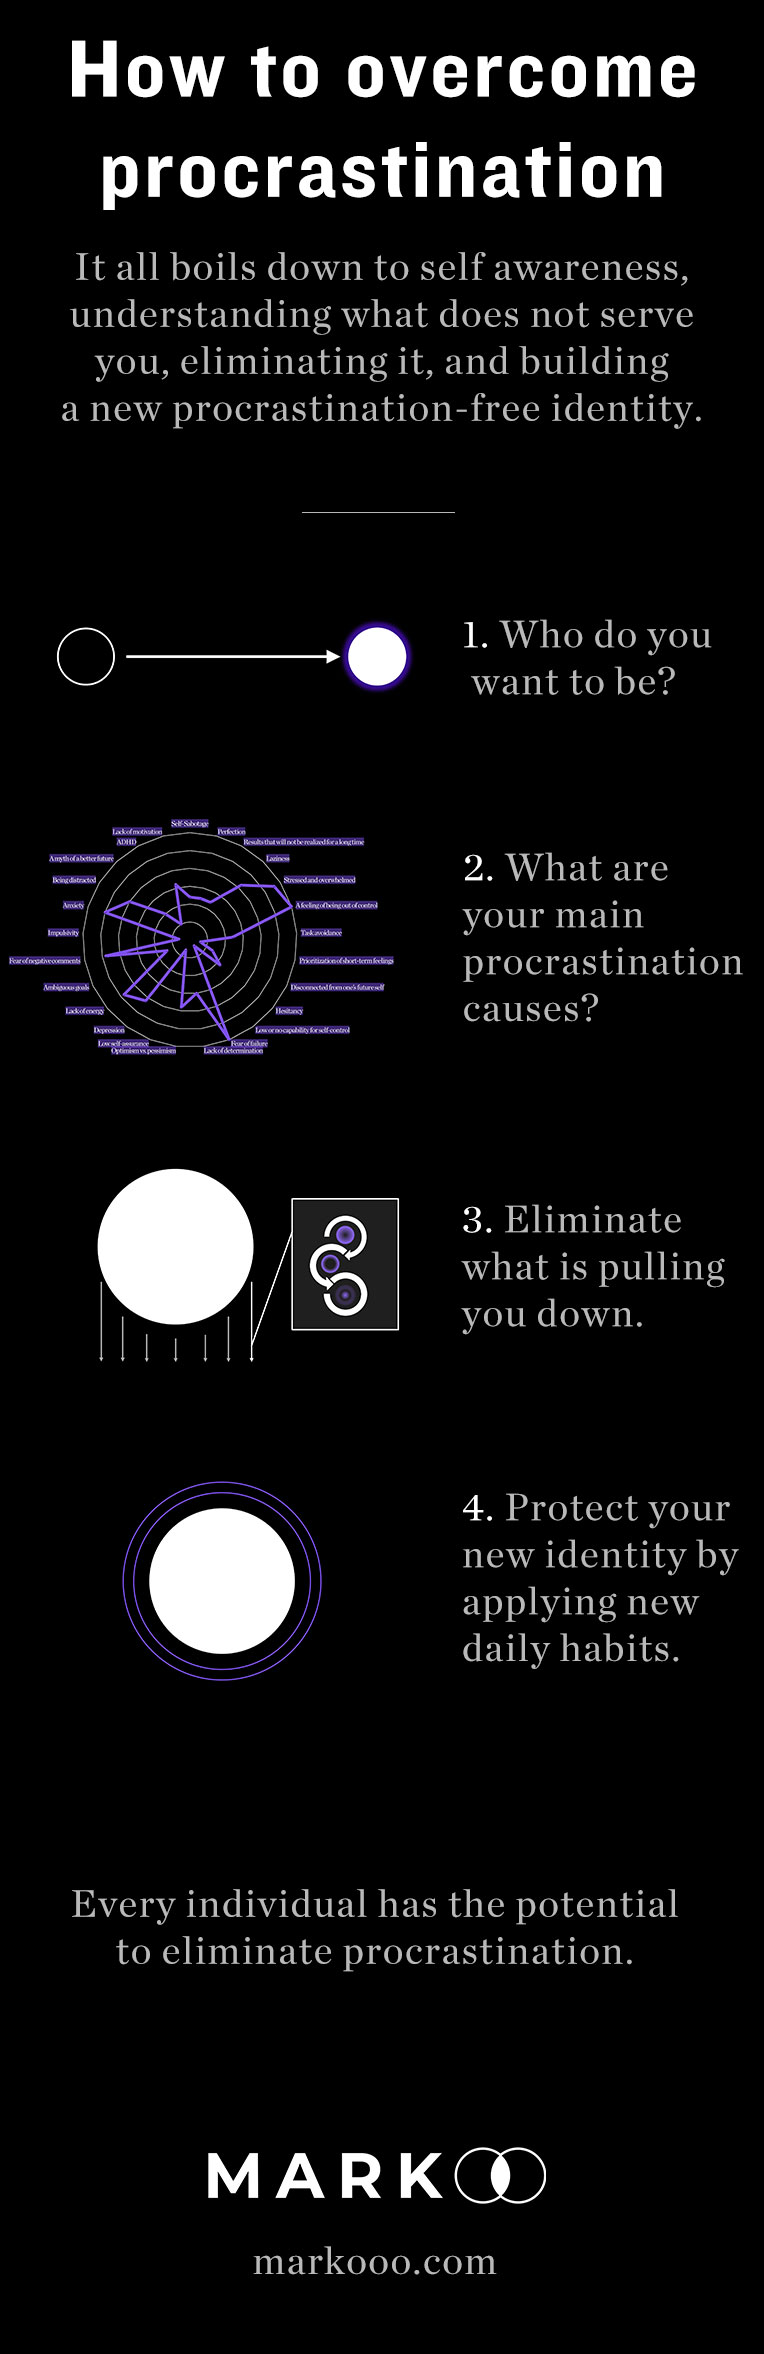 How to overcome procrastination infographic